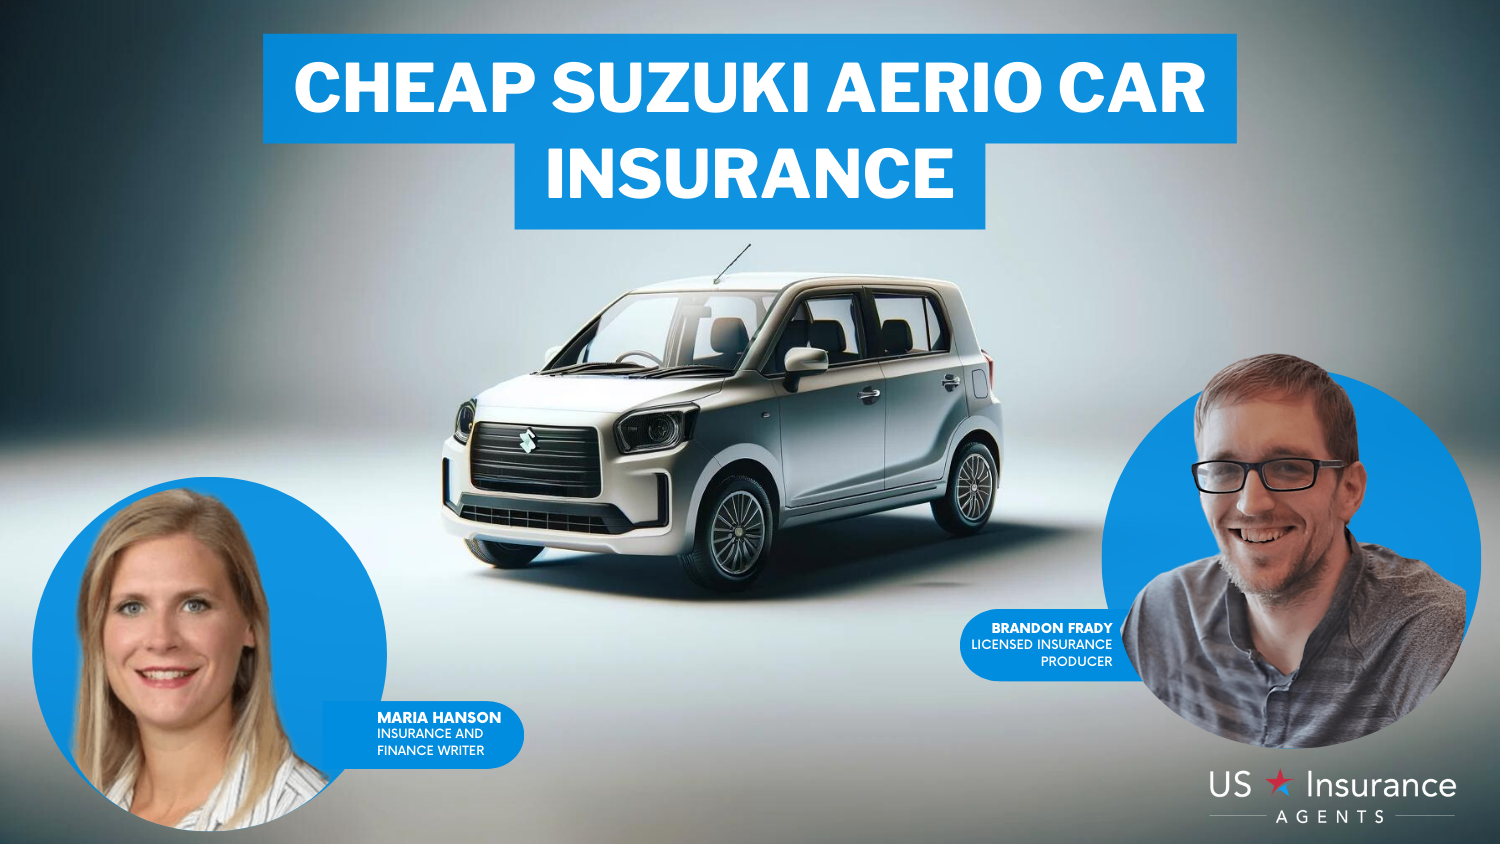 State Farm, USAA, and Progressive: Cheap Suzuki Aerio car insurance